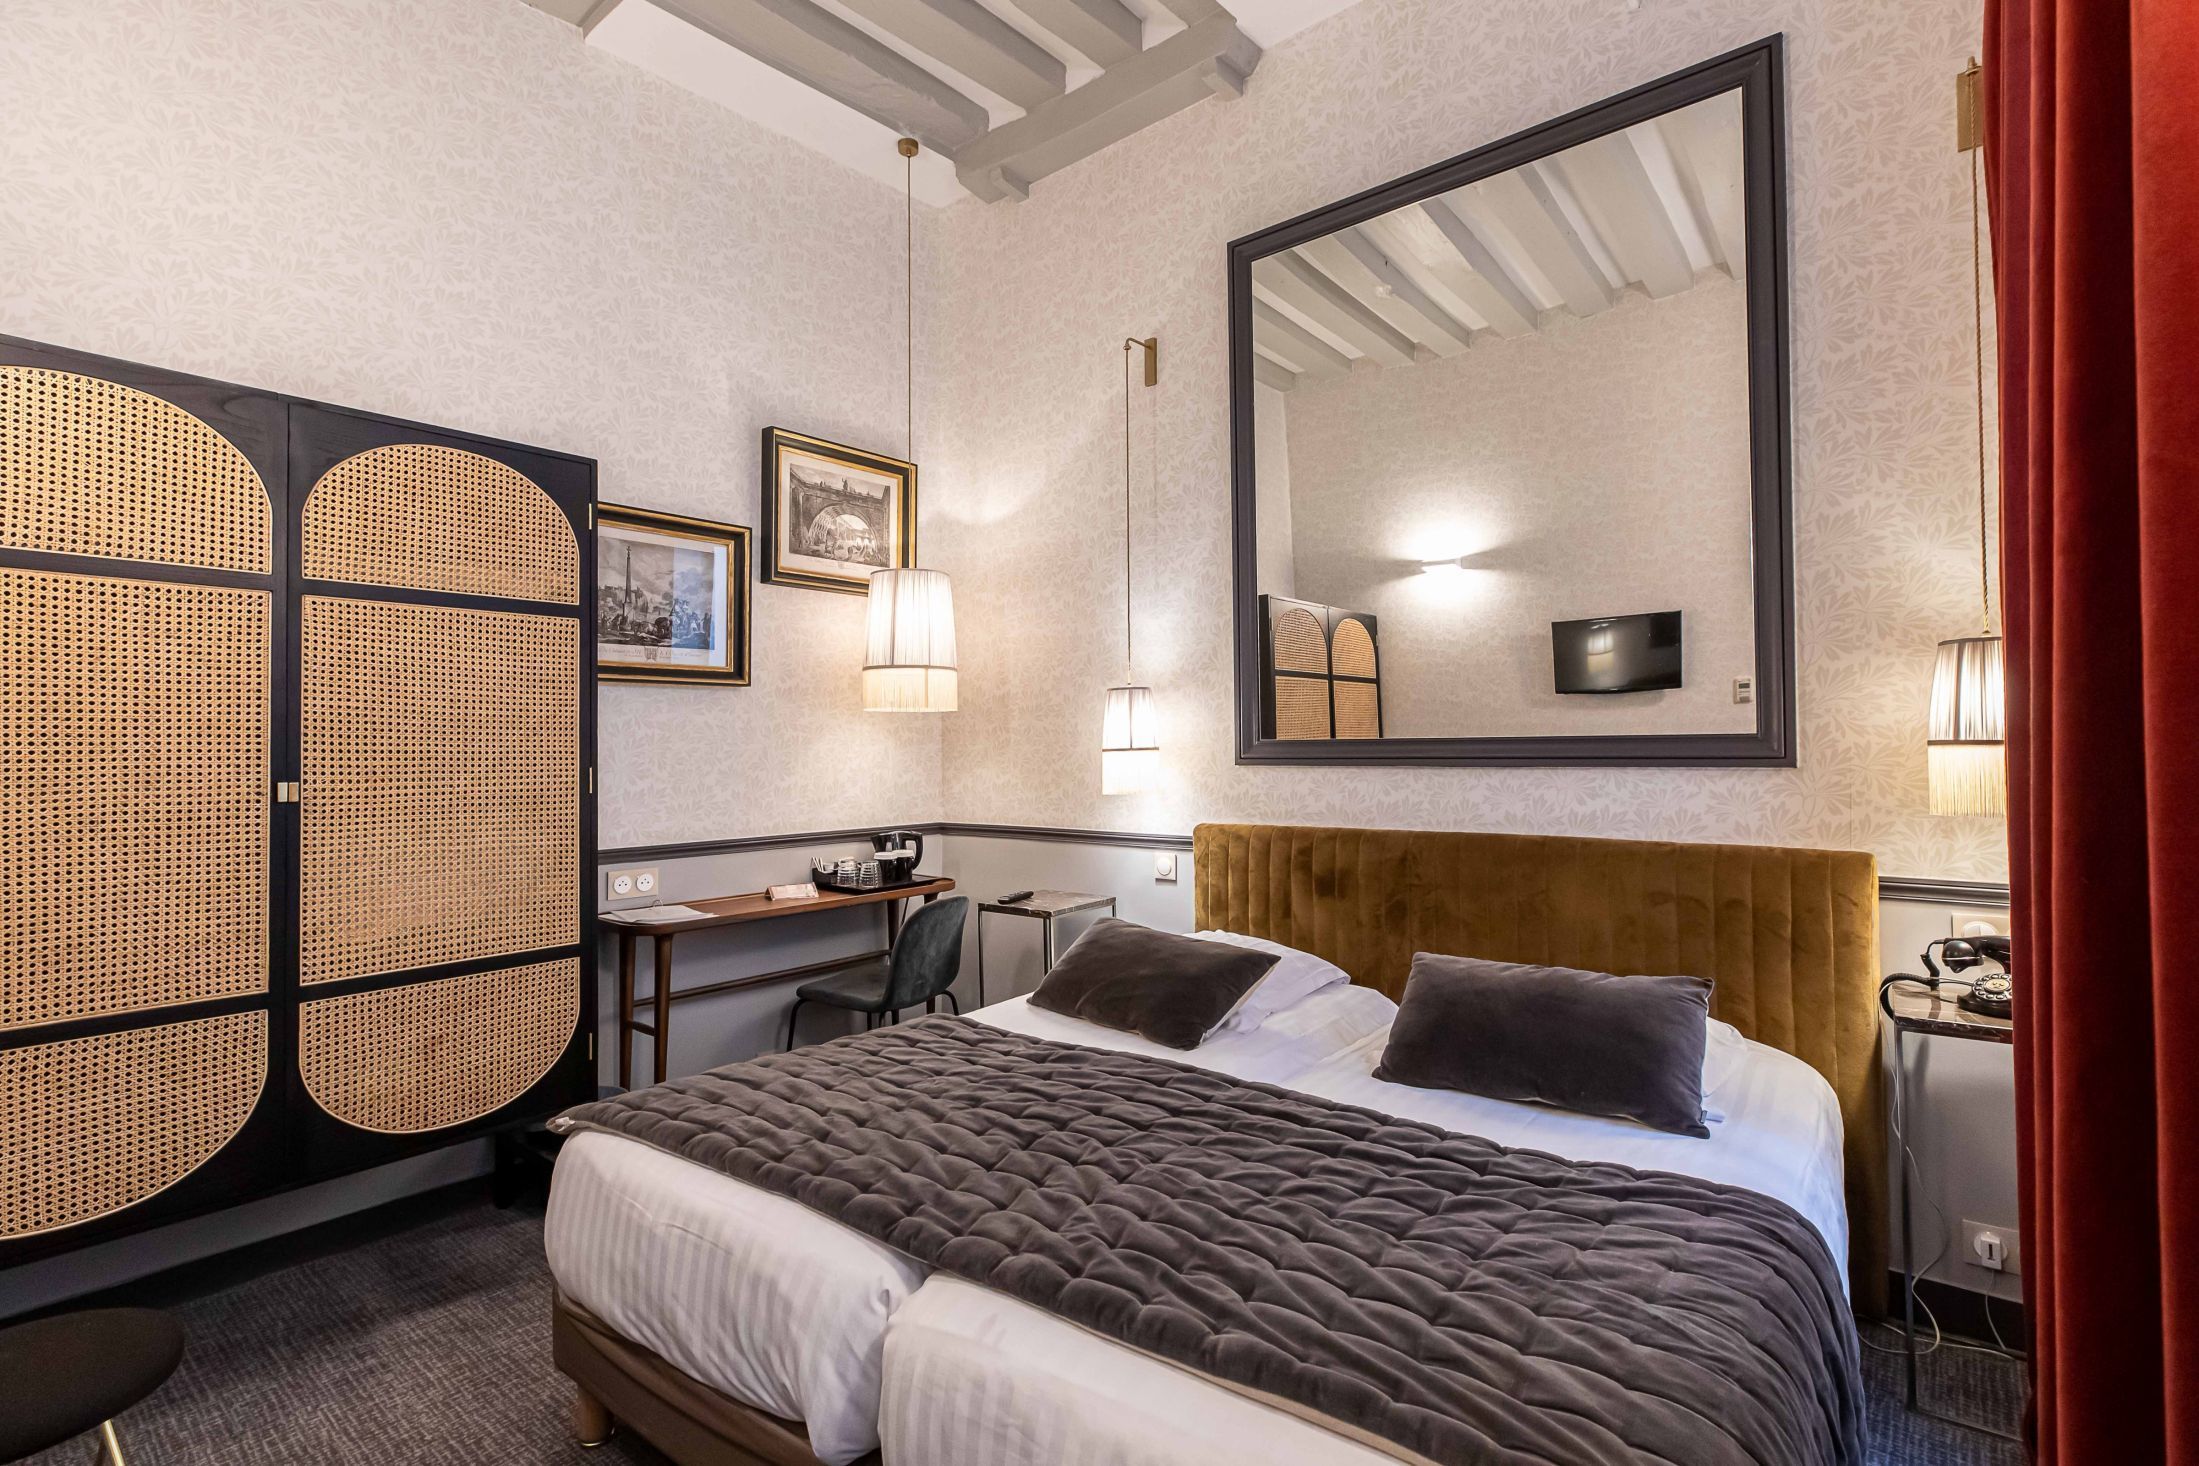 Hotel Dauphine Saint-Germain -
Habitación Superior con 2 Camas Individuales